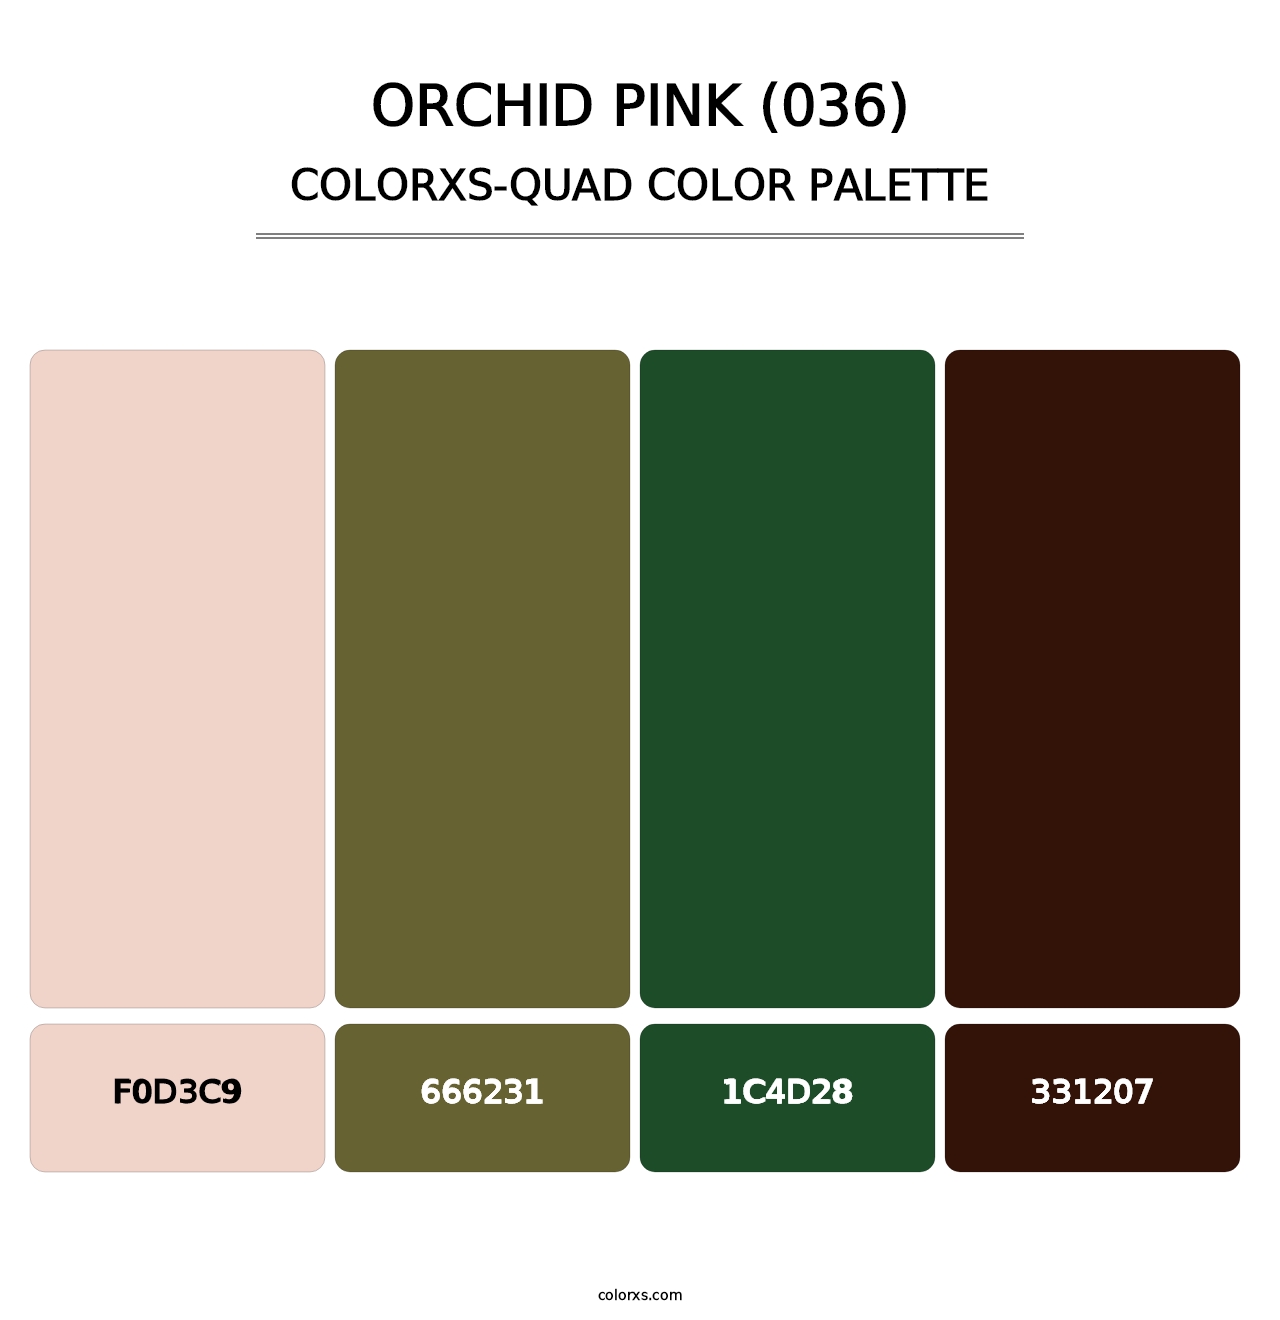 Orchid Pink (036) - Colorxs Quad Palette